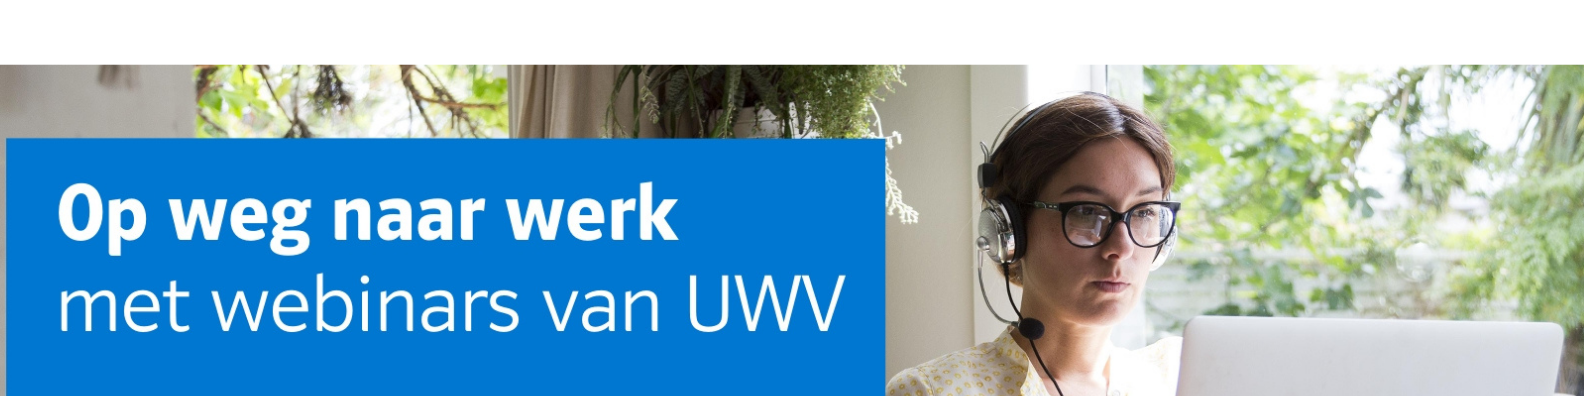 Banner webinar UWV